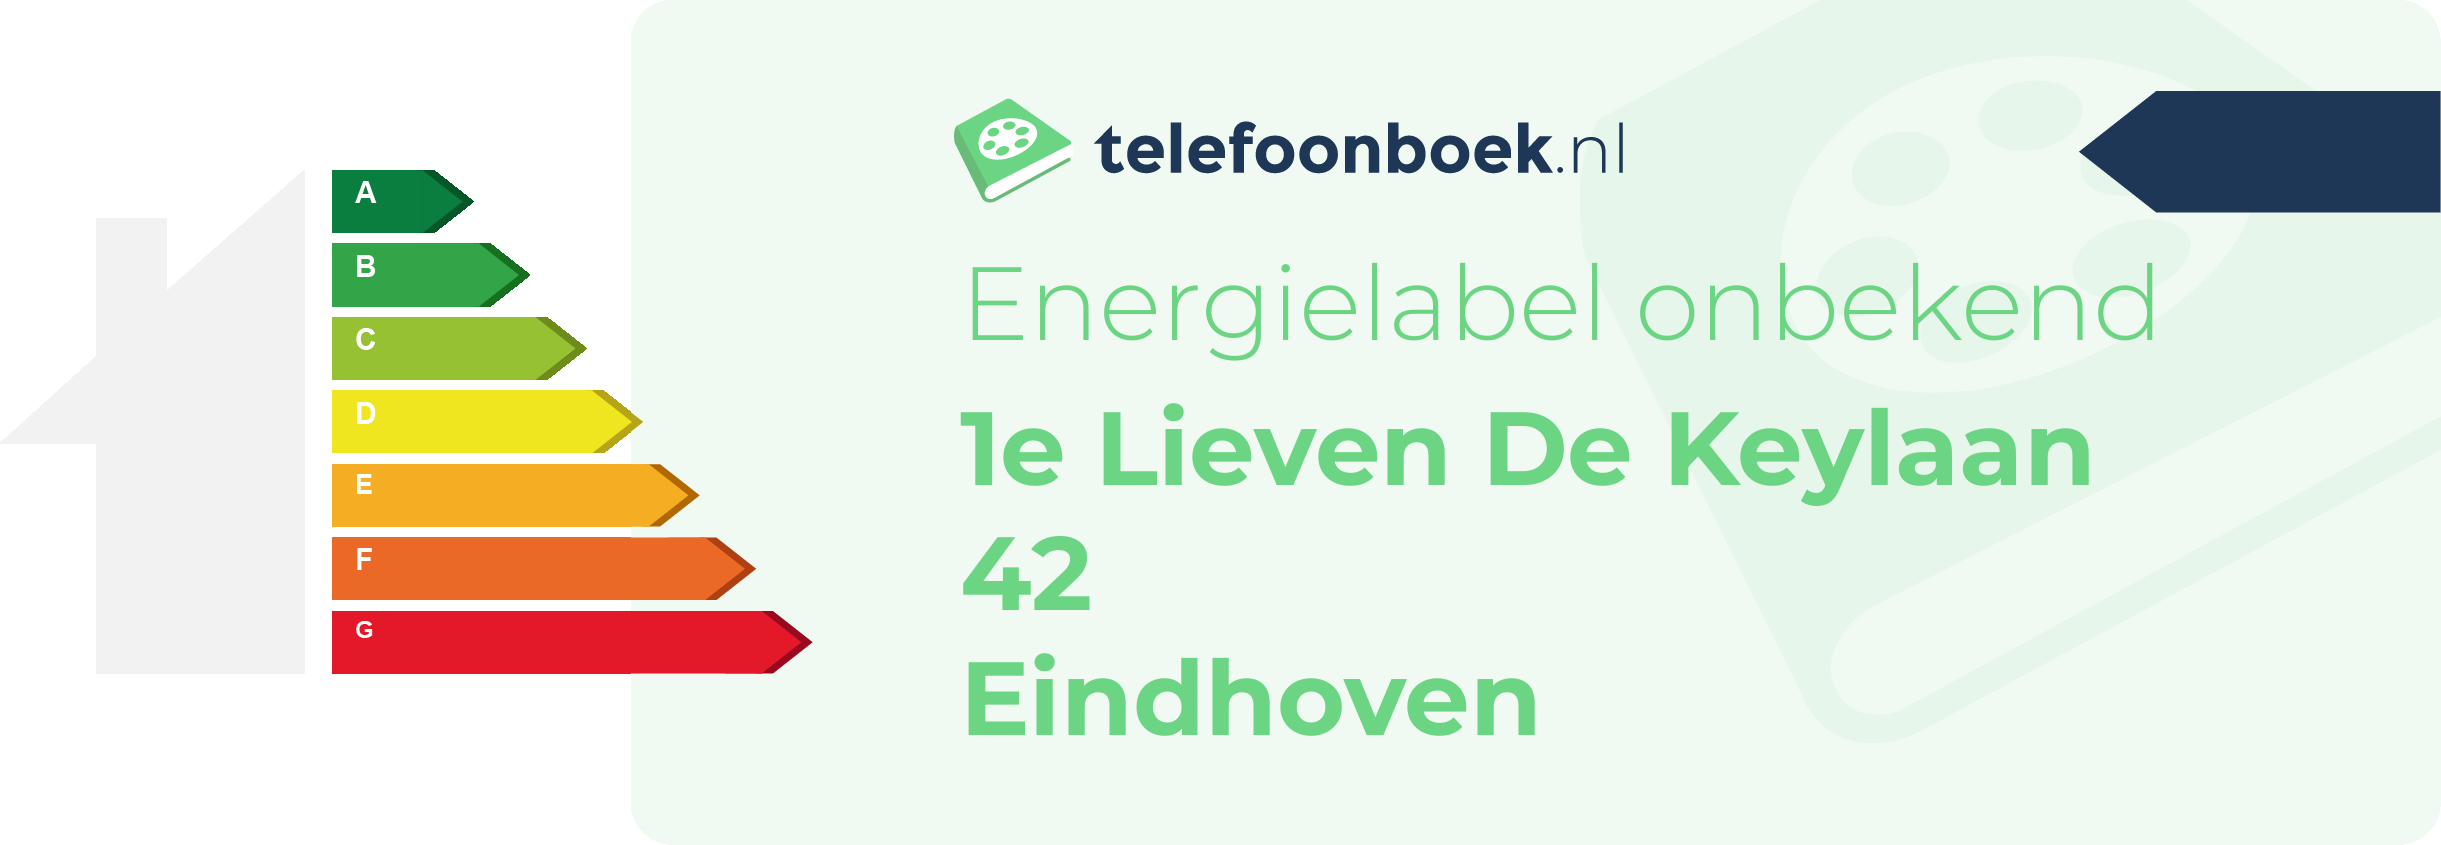 Energielabel 1e Lieven De Keylaan 42 Eindhoven